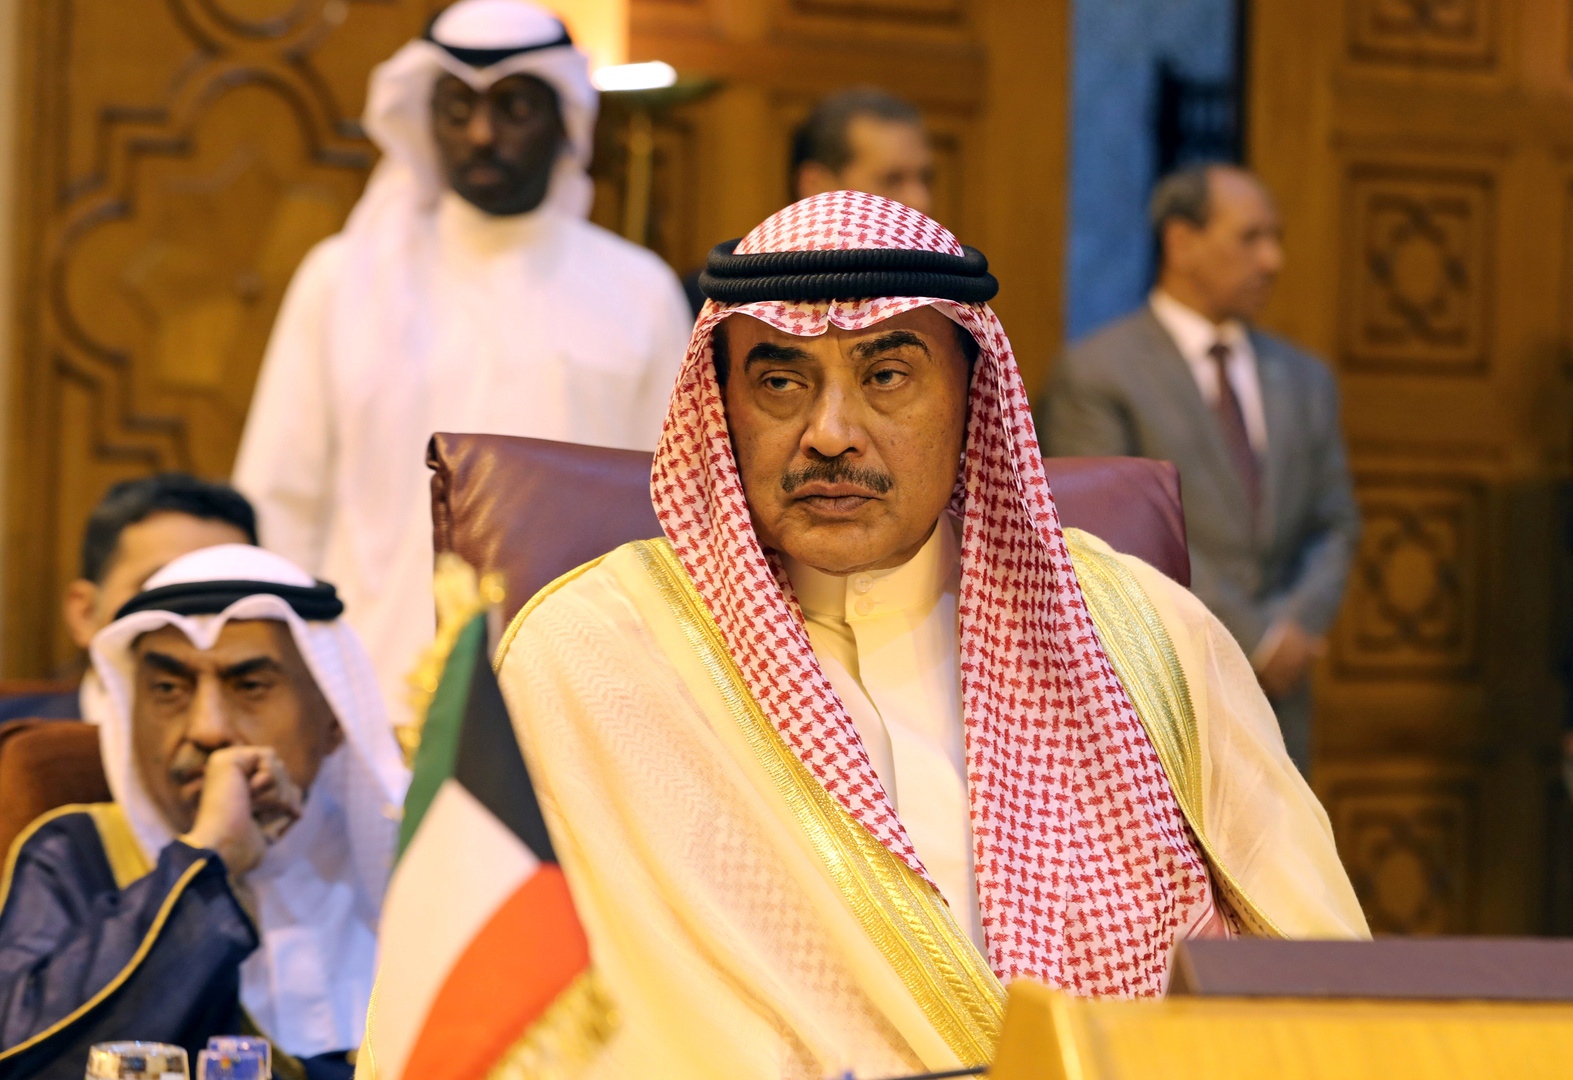   رئيس الحكومة الكويتية: وضعنا الاقتصادى ليس جيدا